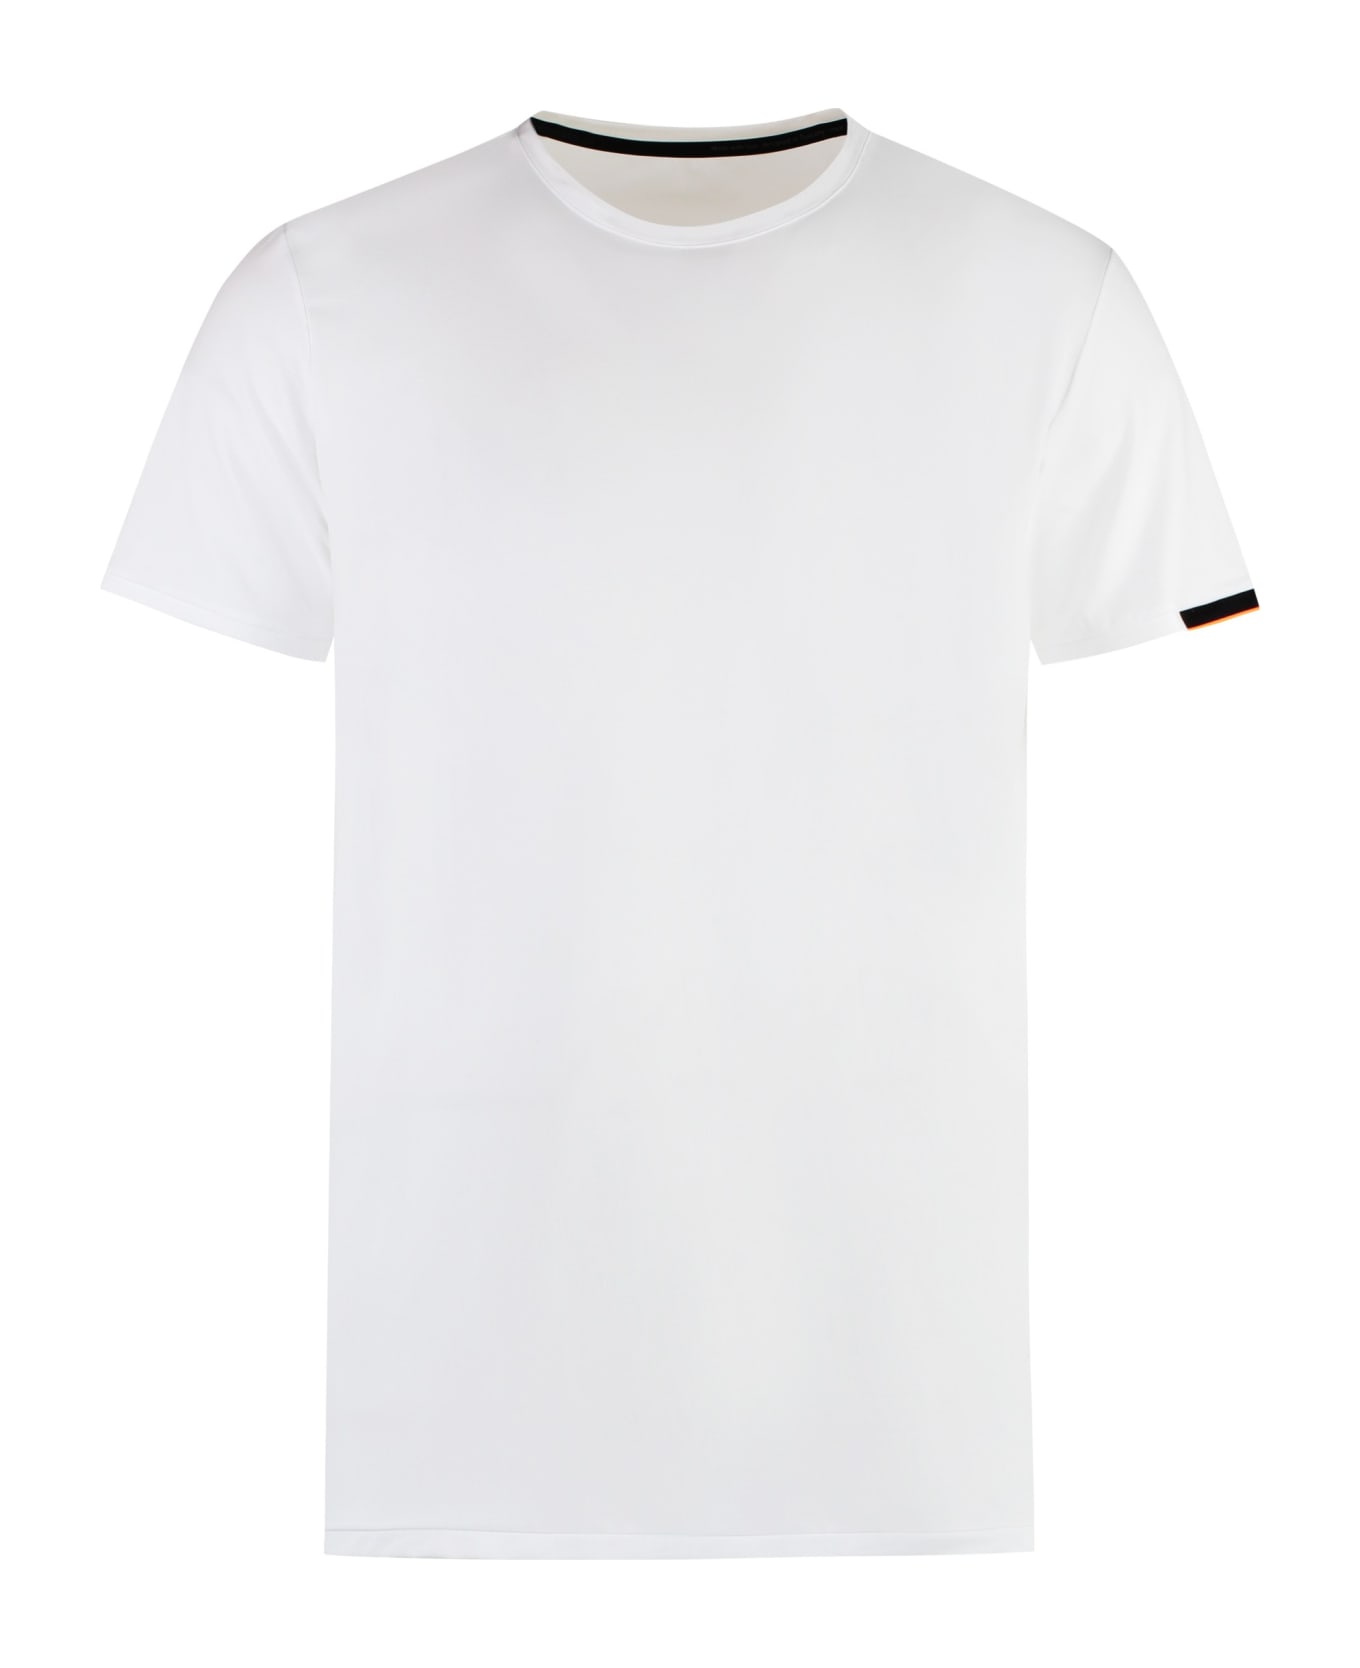 RRD - Roberto Ricci Design Oxford Techno Fabric T-shirt - Bianco シャツ